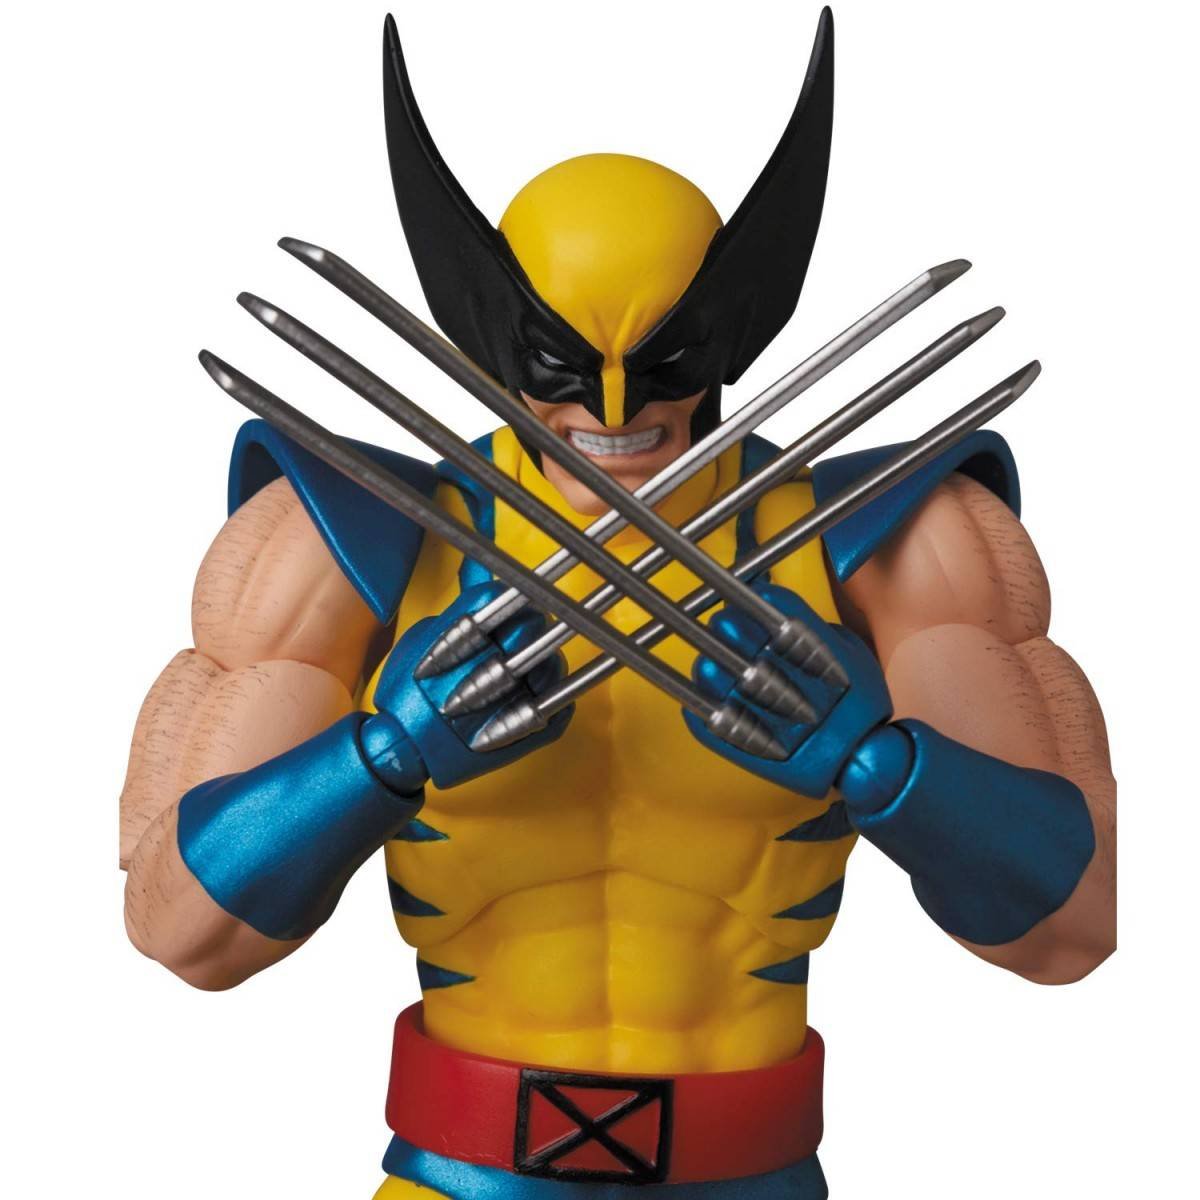 Immagine di Wolverine (X-Men) per la linea MAFEX di Medicom Toy